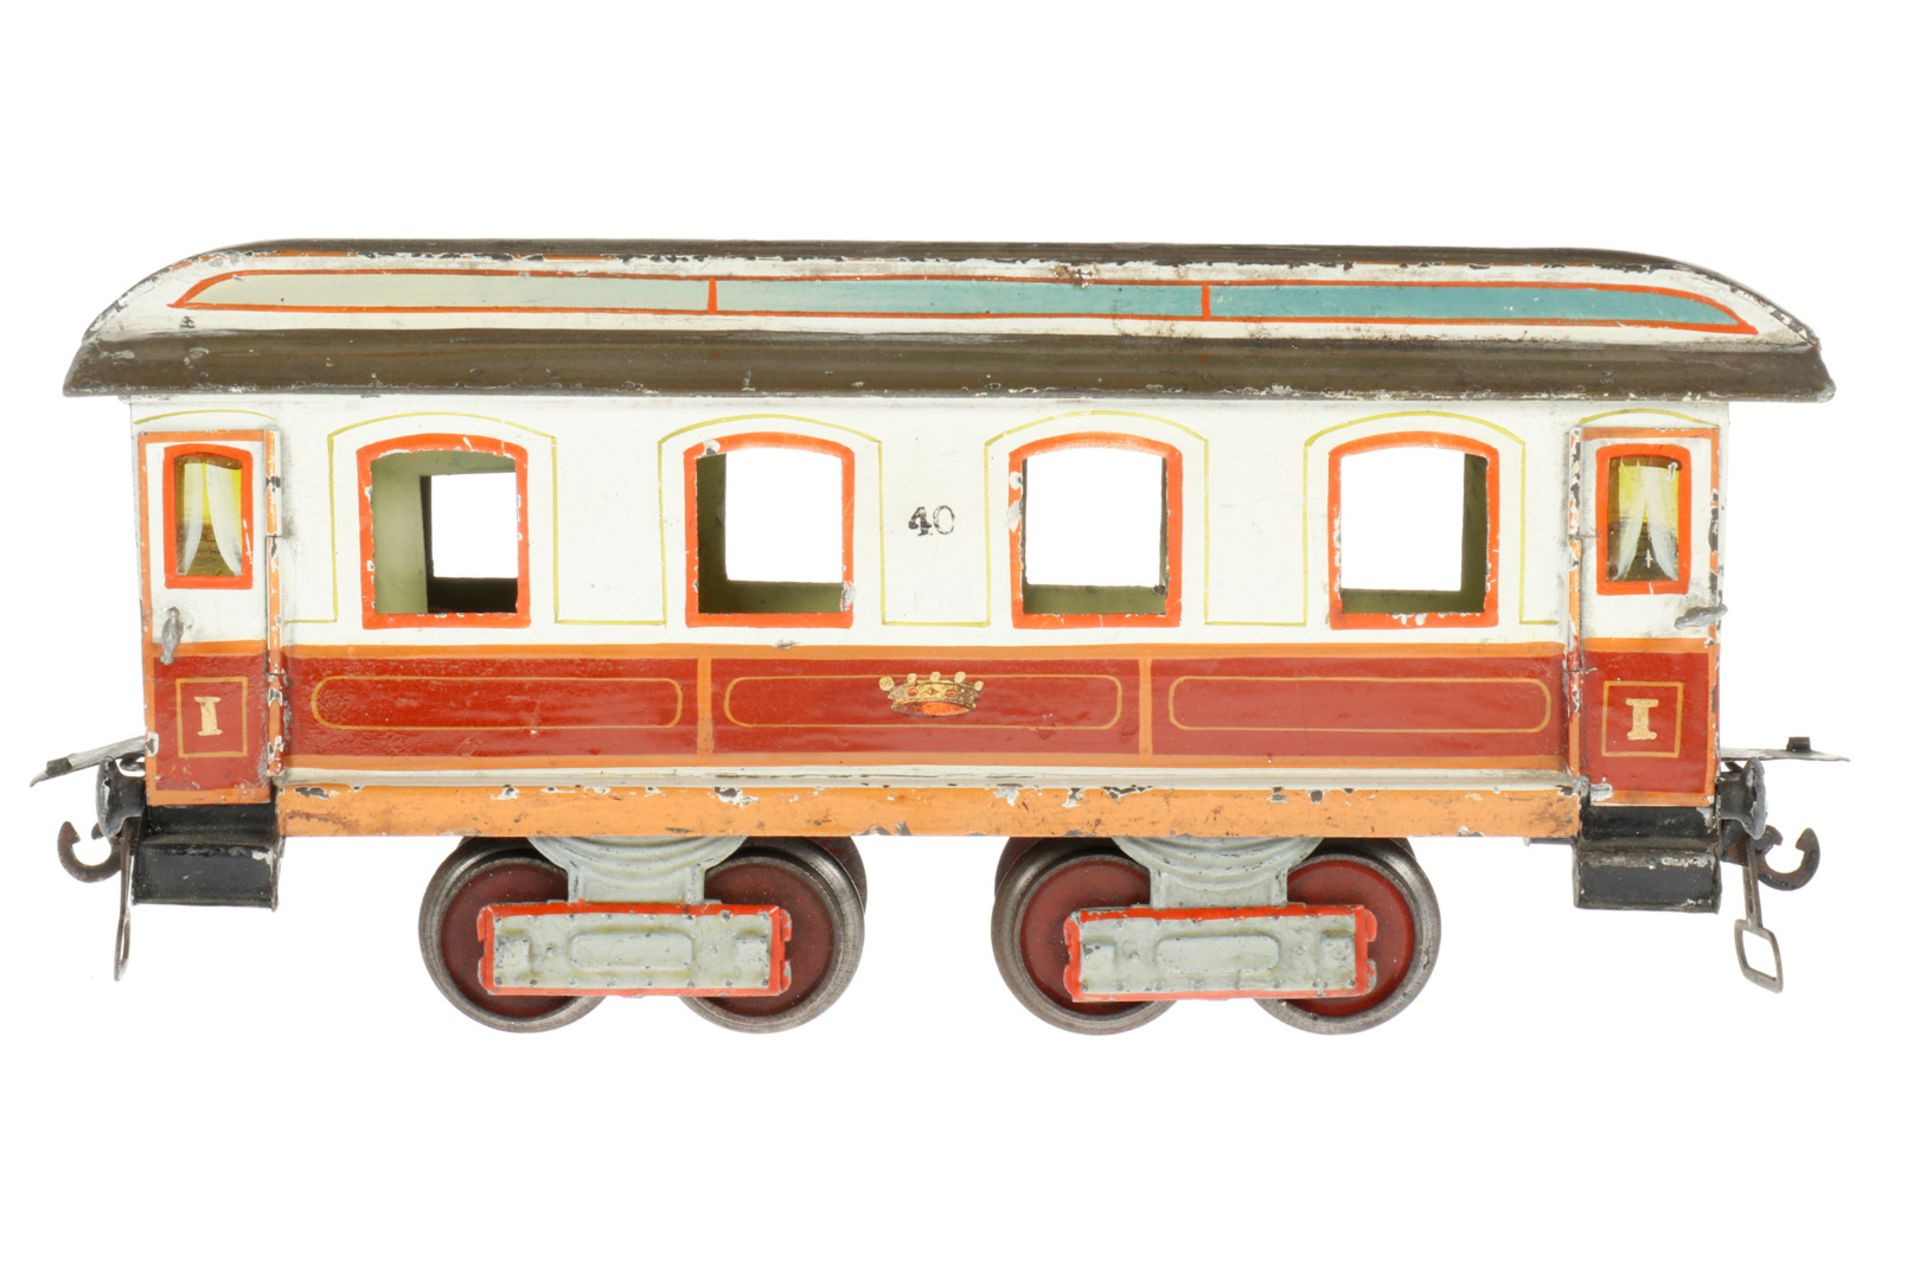 Märklin Schlafwagen “40“ 1843 K, S 1, uralt, braun/weiß, HL, mit Inneneinrichtung (Betten und